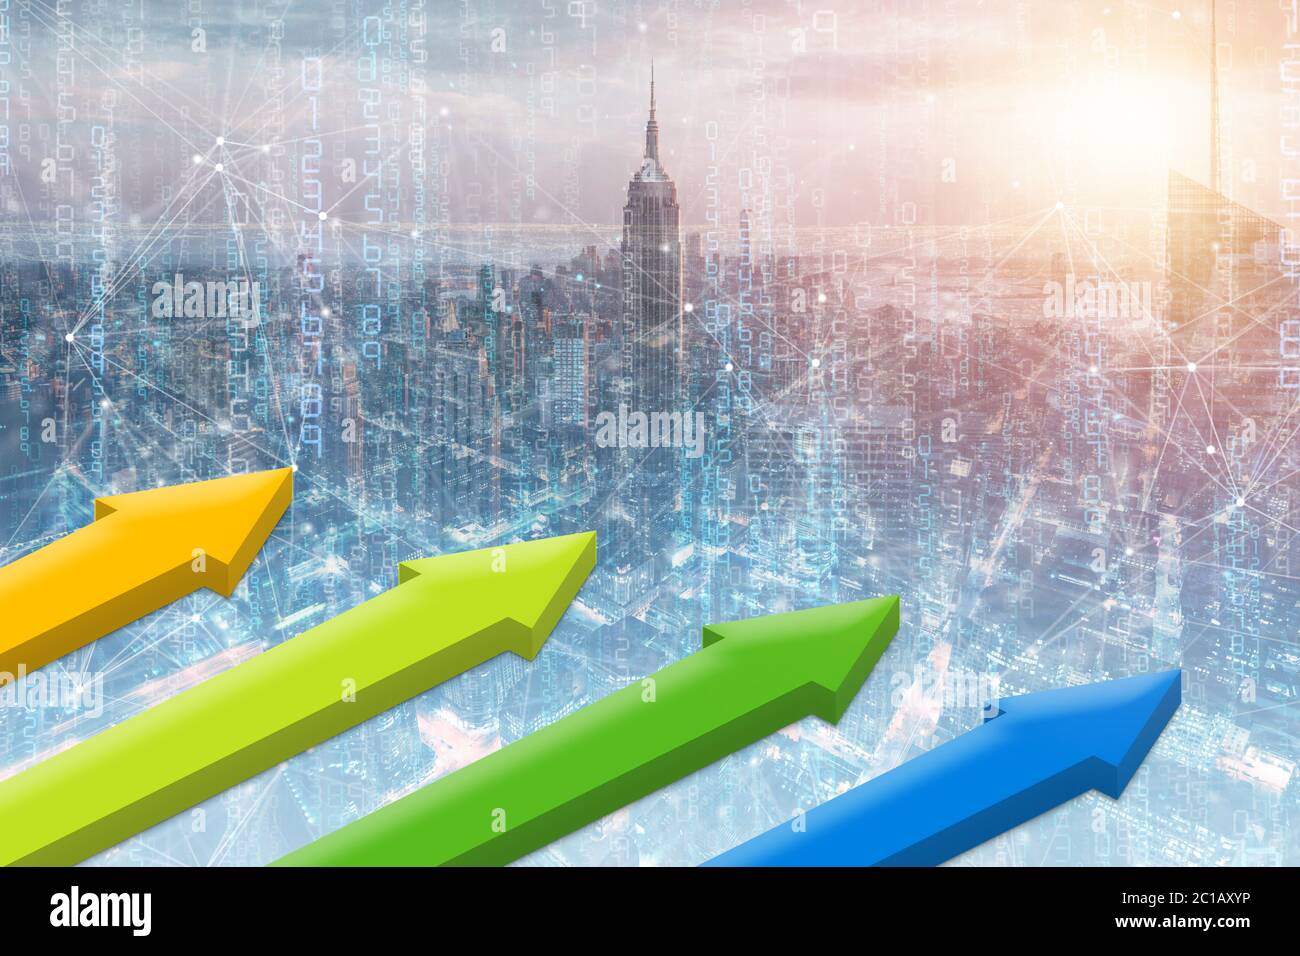 3D-Illustration, die mit Geschäftsgebäude und Aktiendiagramm. Symbol Pfeil nach oben, mit Stock Graph Hintergrund, Konzept Geschäft und Investitionen, Stock mar Stockfoto